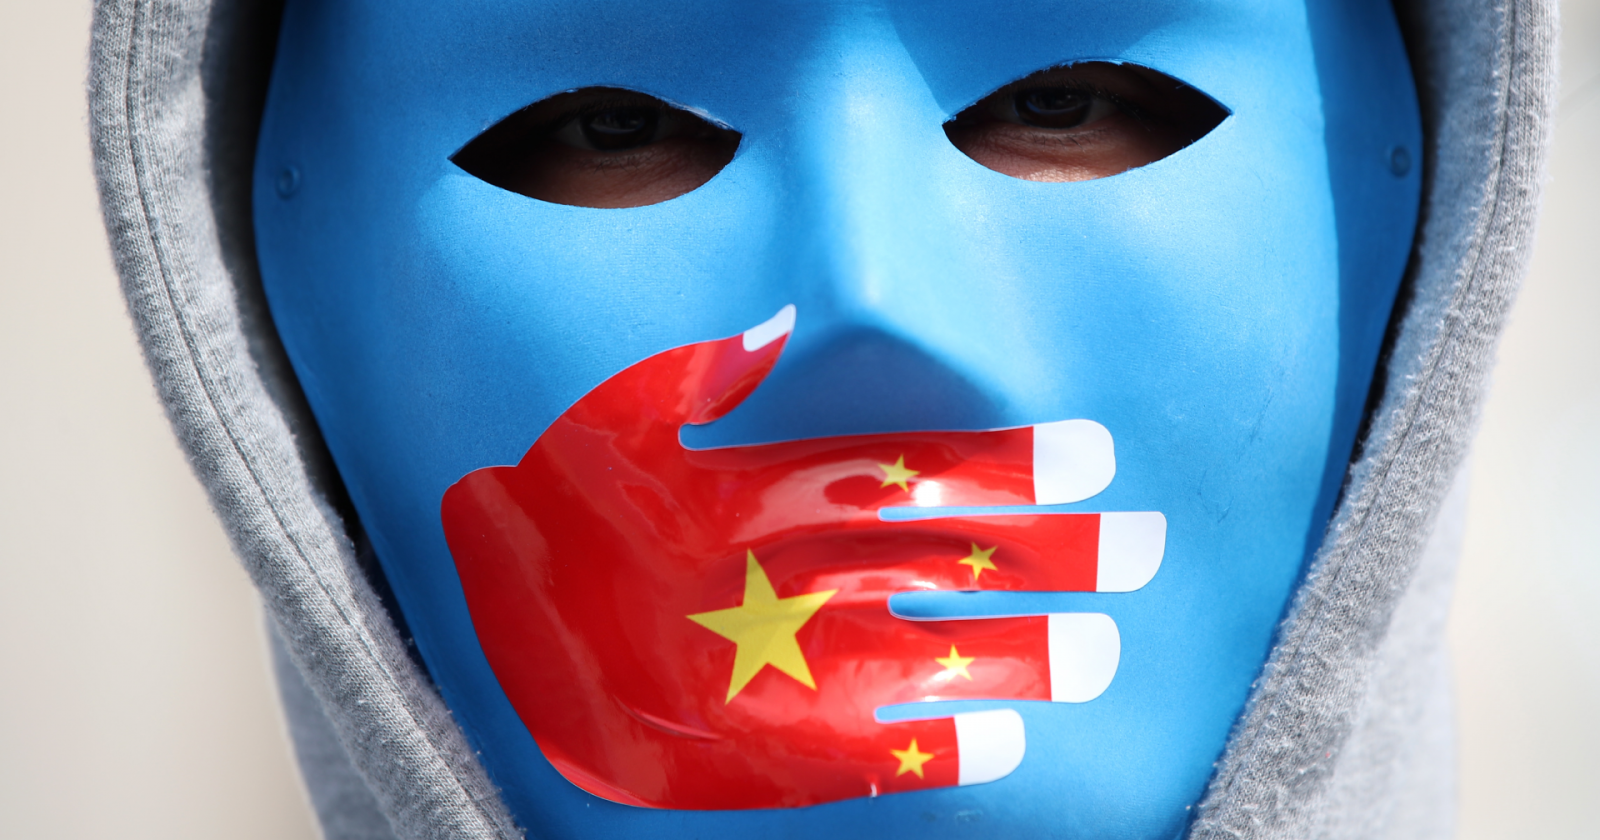 24 horas - Mesa del Mundo: la problemática de los uigures en China - Escuchar ahora